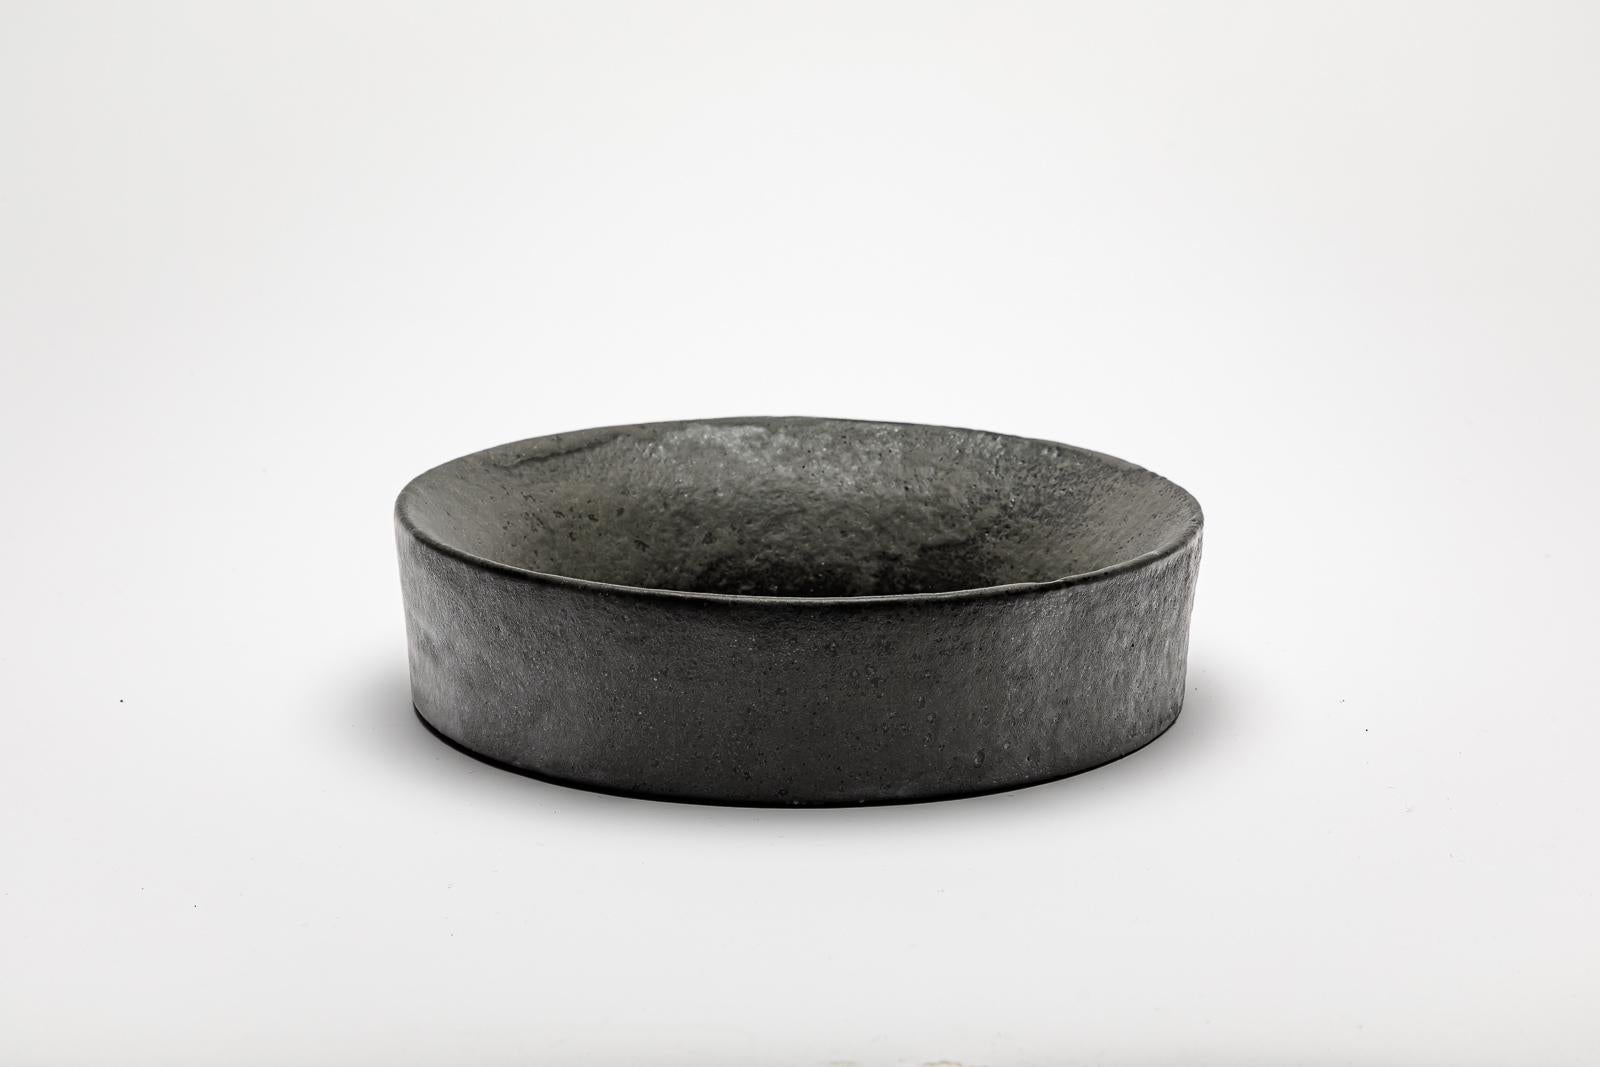 Metallisch schwarz glasierter Keramikspiegel von Mia Jensen.
Künstlersignatur unter dem Sockel. CIRCA 2023-2024.
H : 2,4' x 9,8' Zoll.

